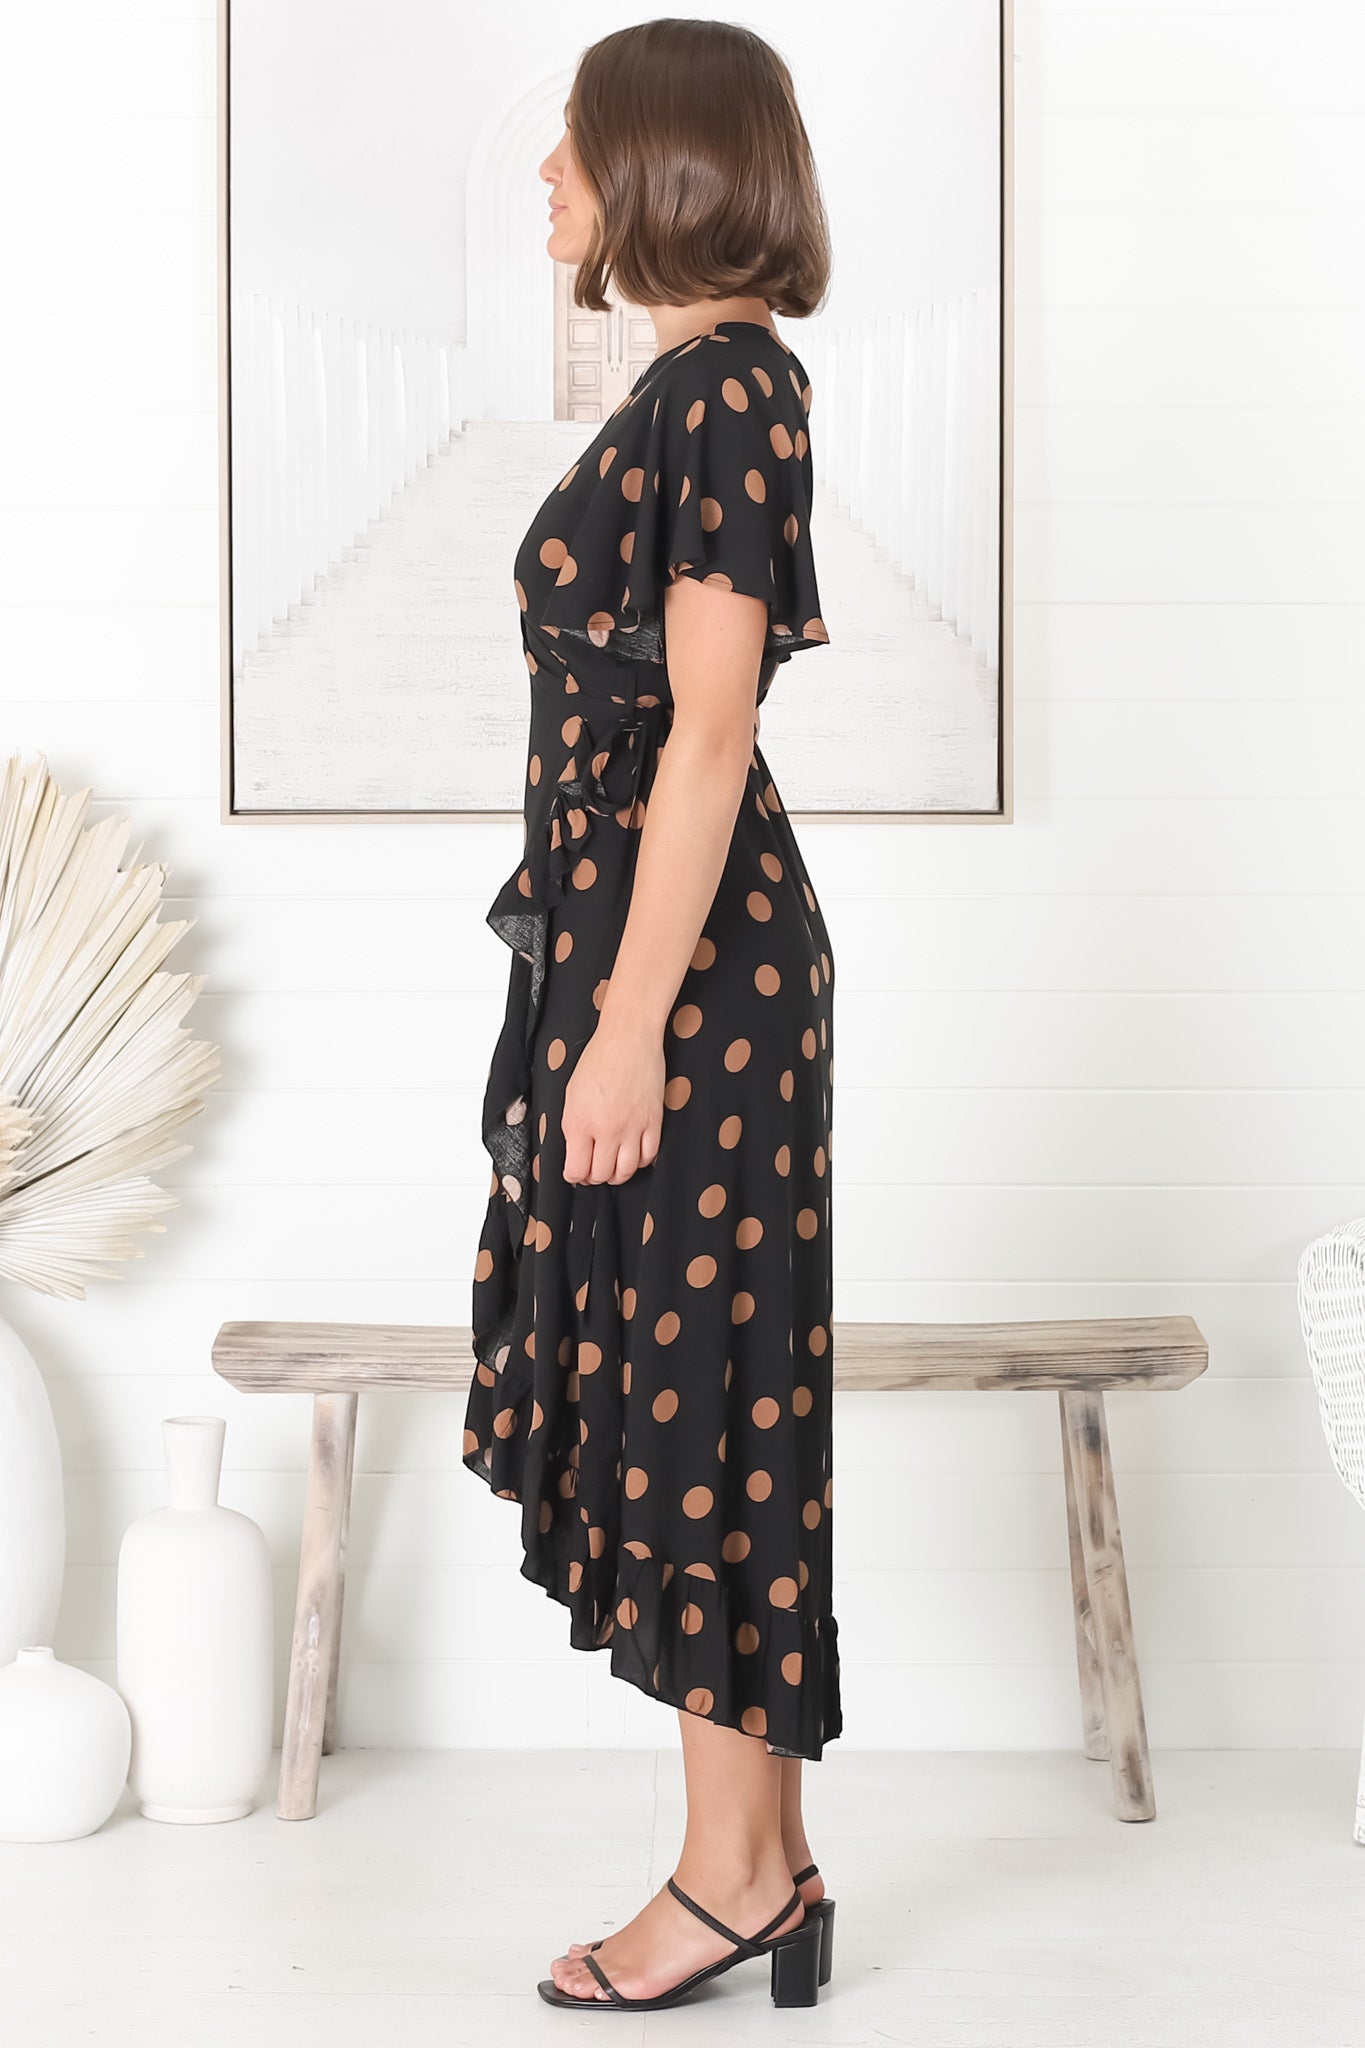 Carolina Midi Dress - V Neck Wrap Dress with Ruffle High Low Hemline in Mahony Print